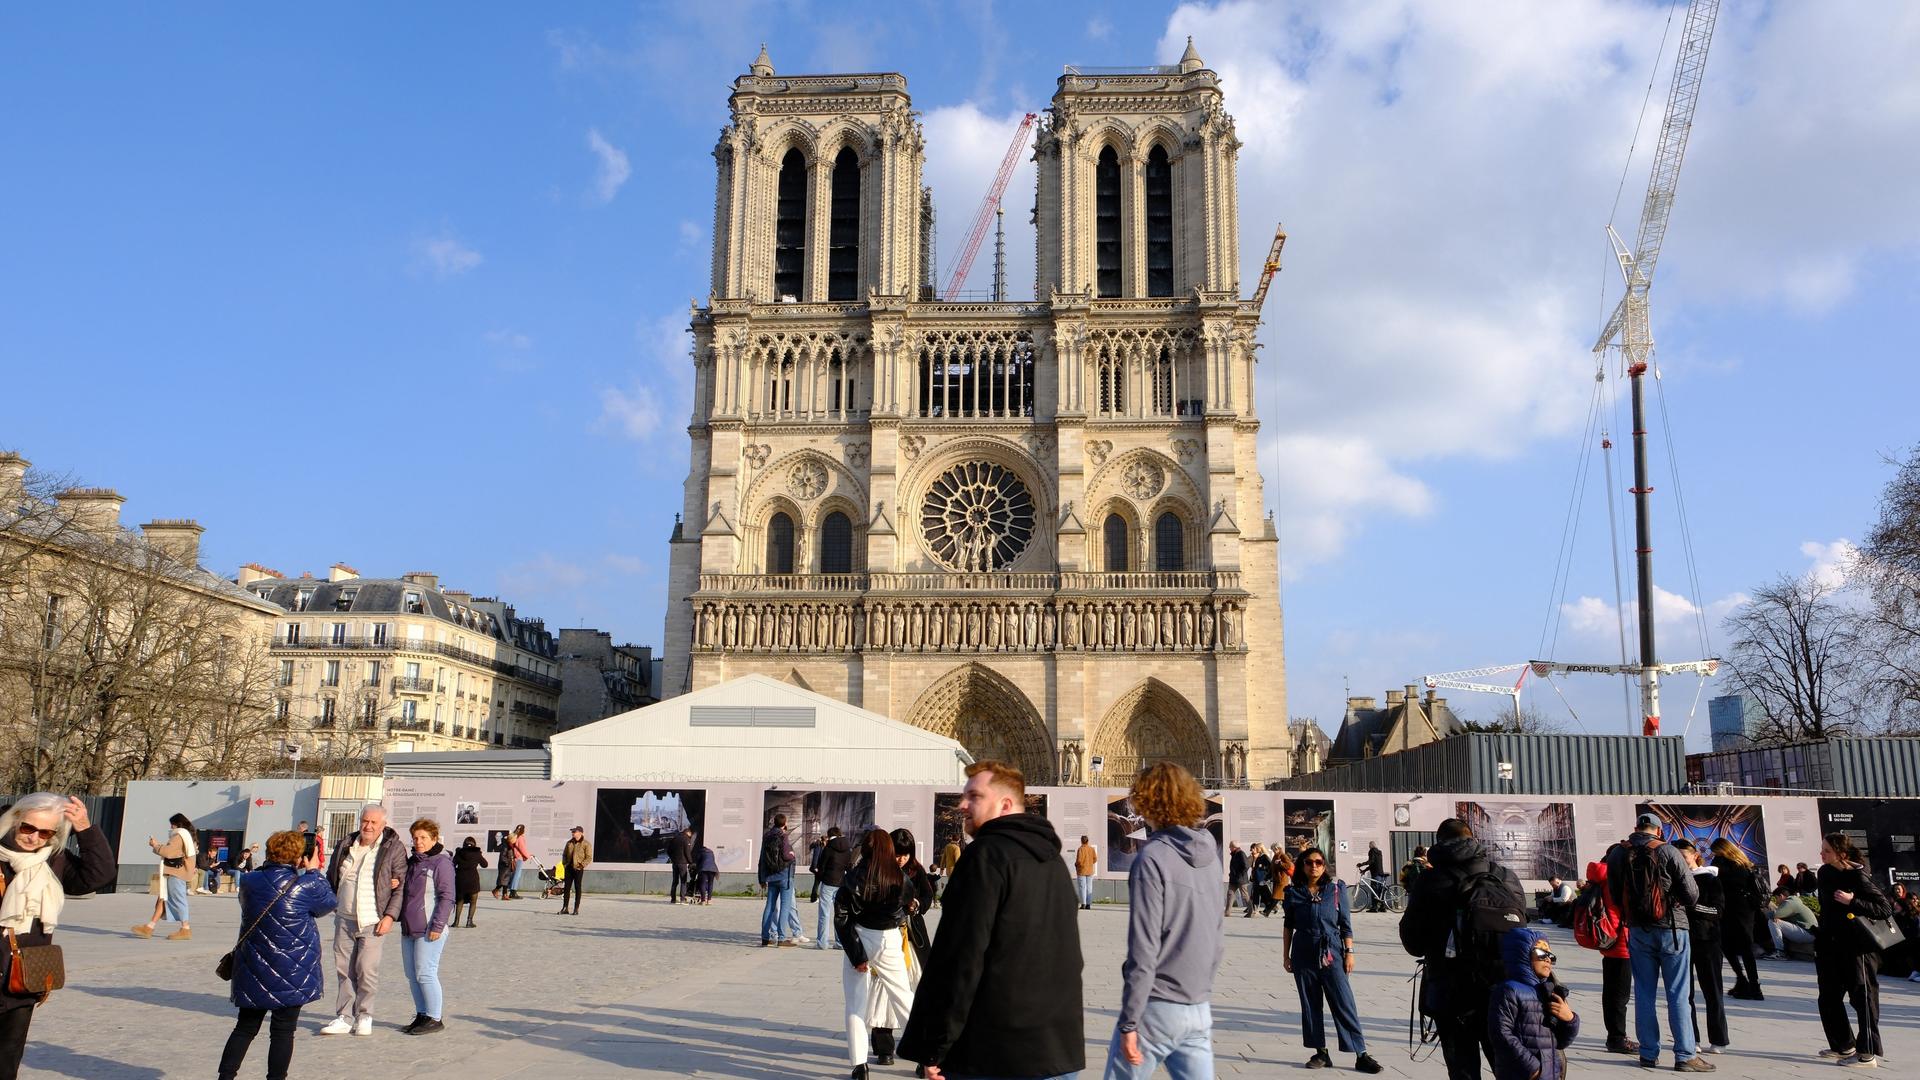 Blick auf die Pariser Kirche Notre Dame: Auf dem Platz im Vordergrund sind herumlaufende Menschen zu sehen, hinter der Kirche ragen zwei Baukräne hervor.